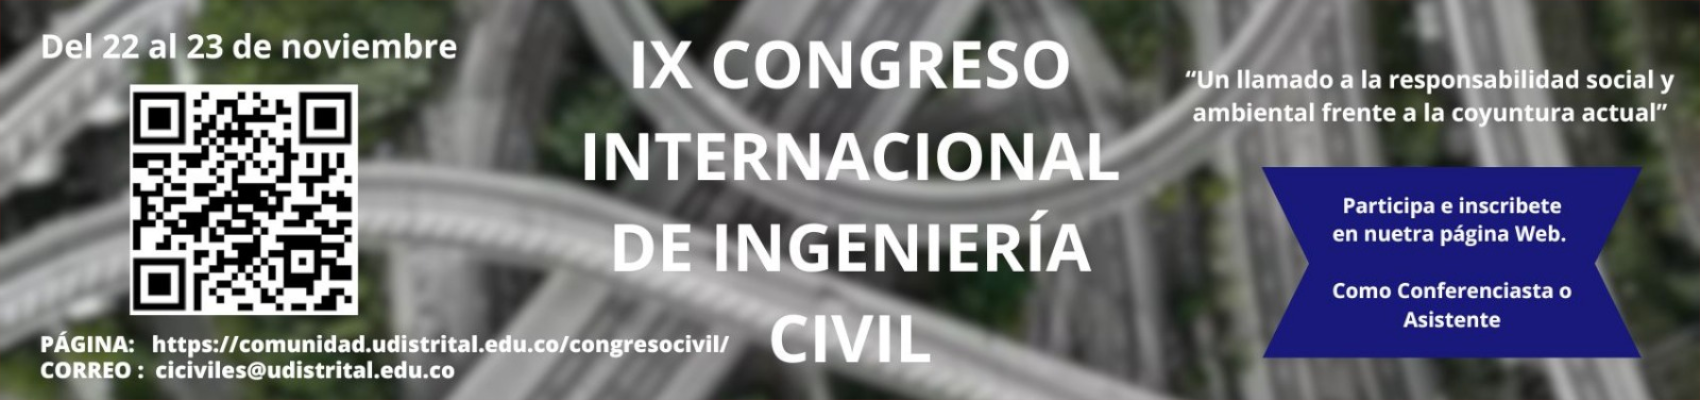 IXX CONGRESO INTERNACIONAL DE INGENIERÍA CIVIL 